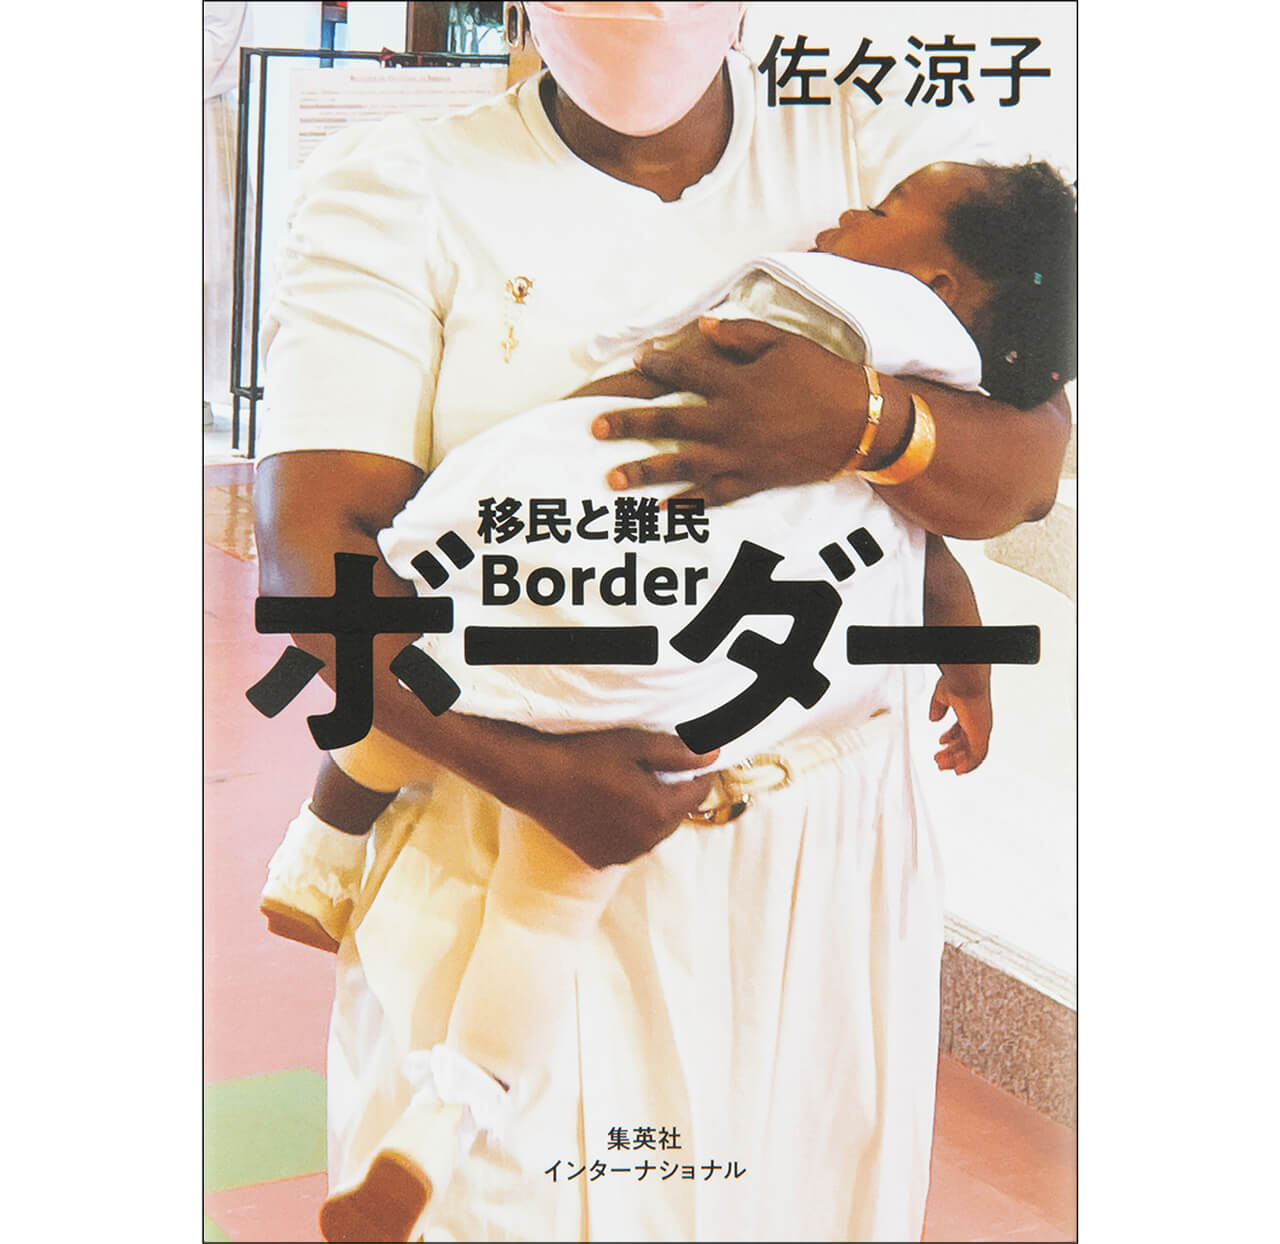 『ボーダー 移民と難民』佐々涼子　￥1980　集英社インターナショナル